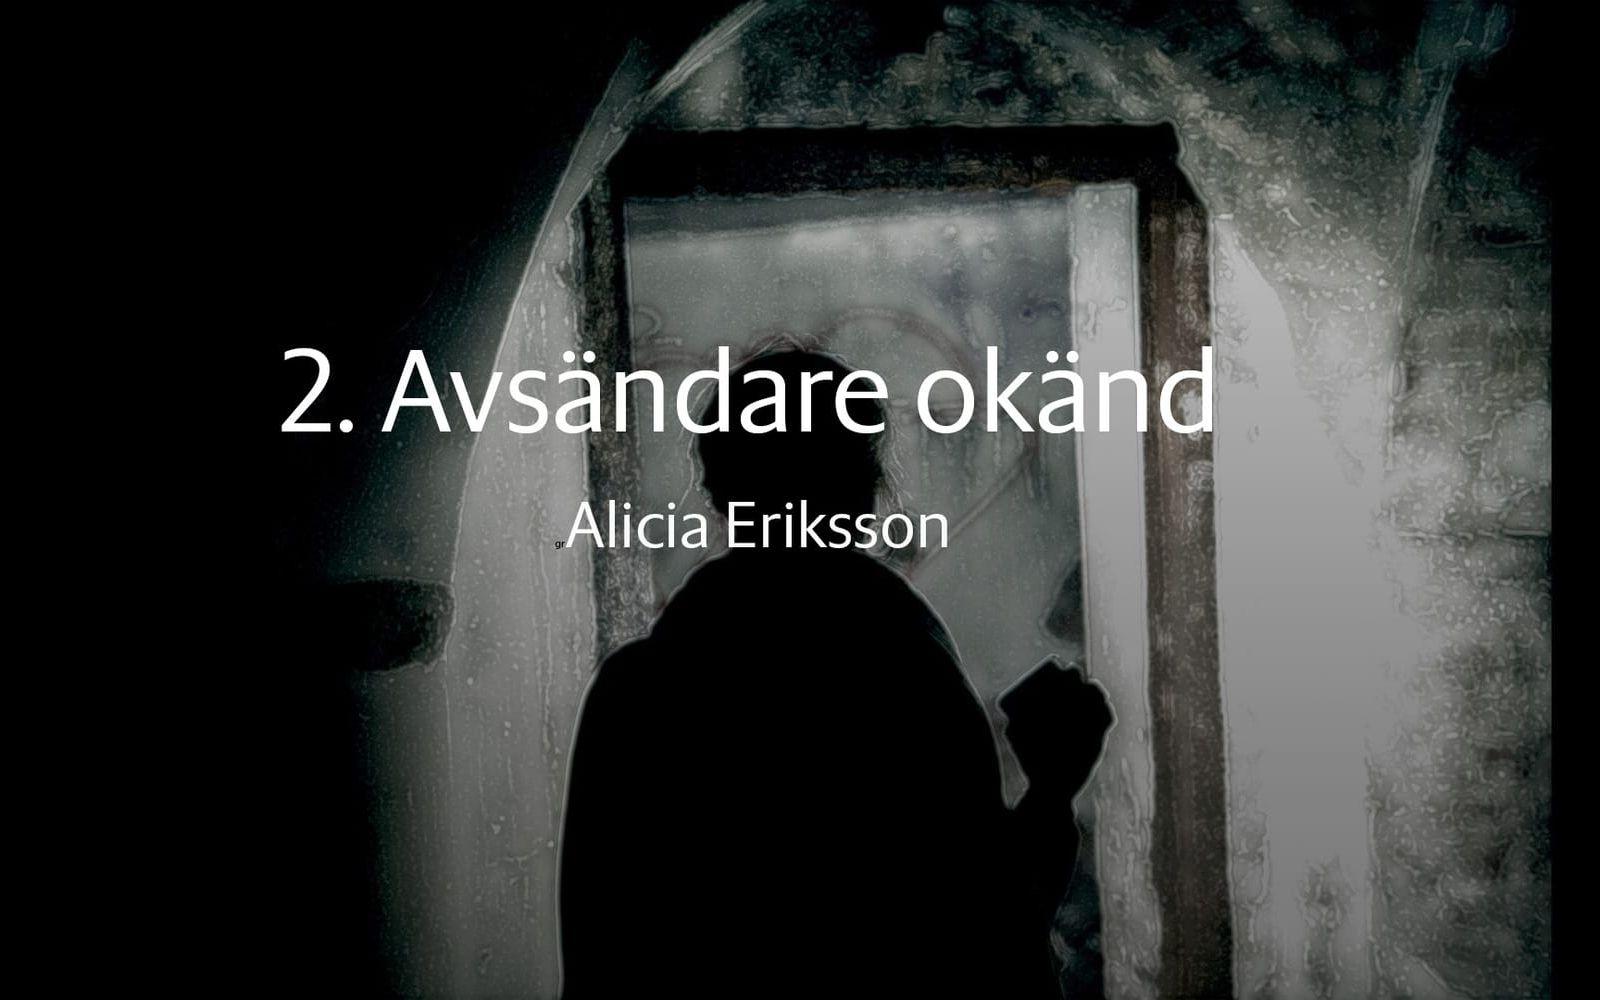 Andra bidraget är Avsändare okänd och är skrven av Alicia Eriksson från Uddevalla. 